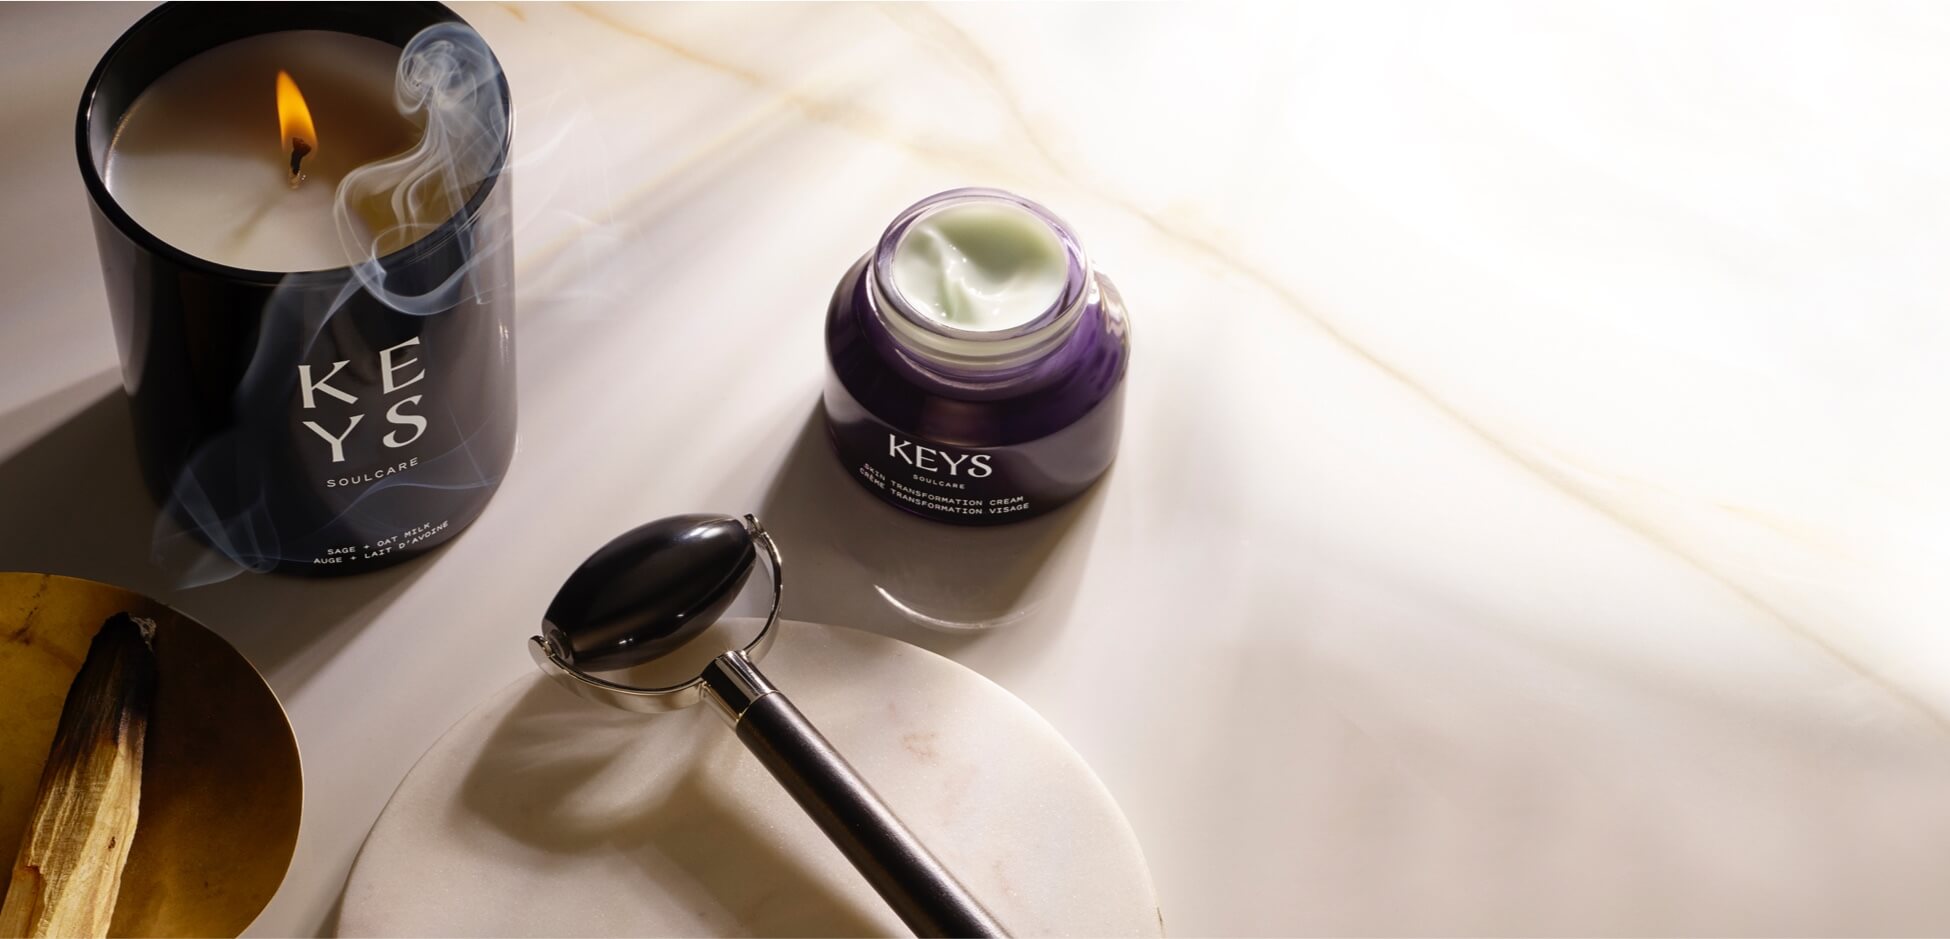 KeysSoulcare: Alicia Keys' cosmetics brand arrives in ...